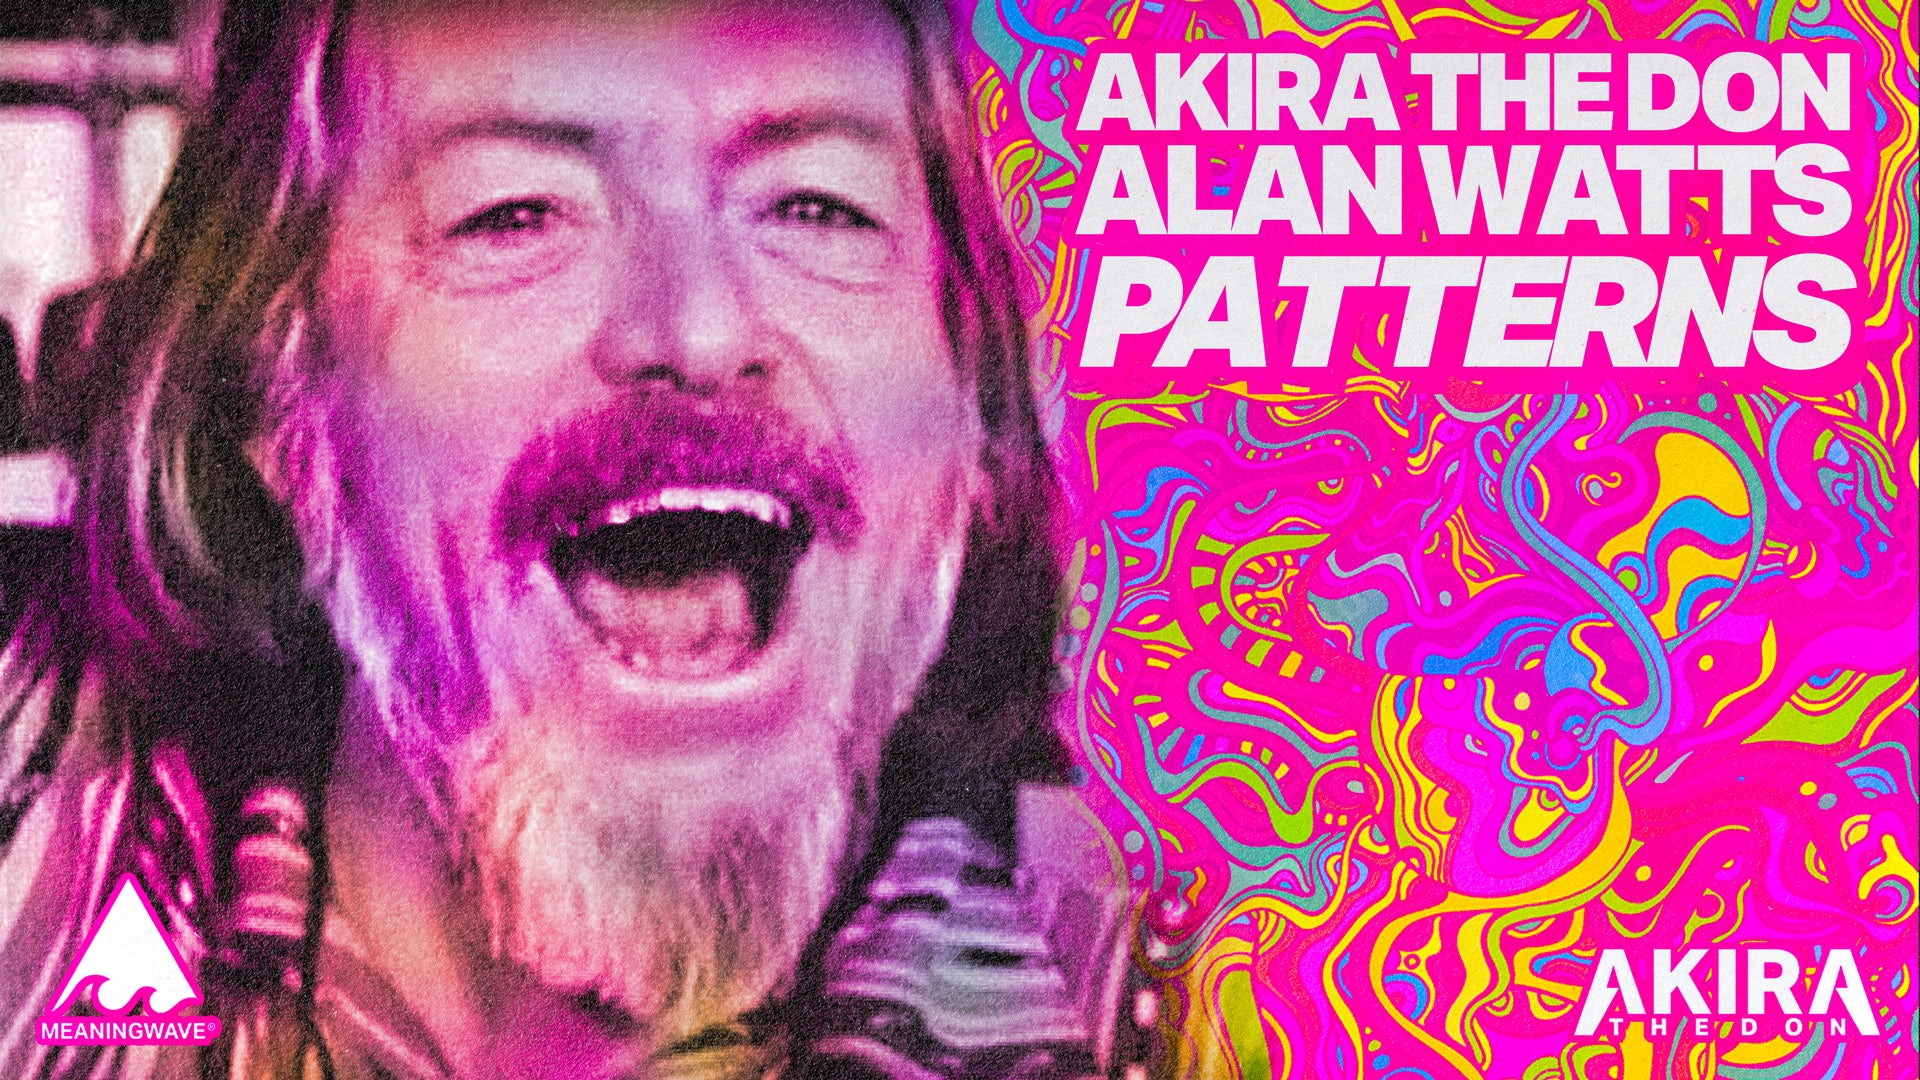 Alan Watts & Akira The Don - PATTERNS | Music Video